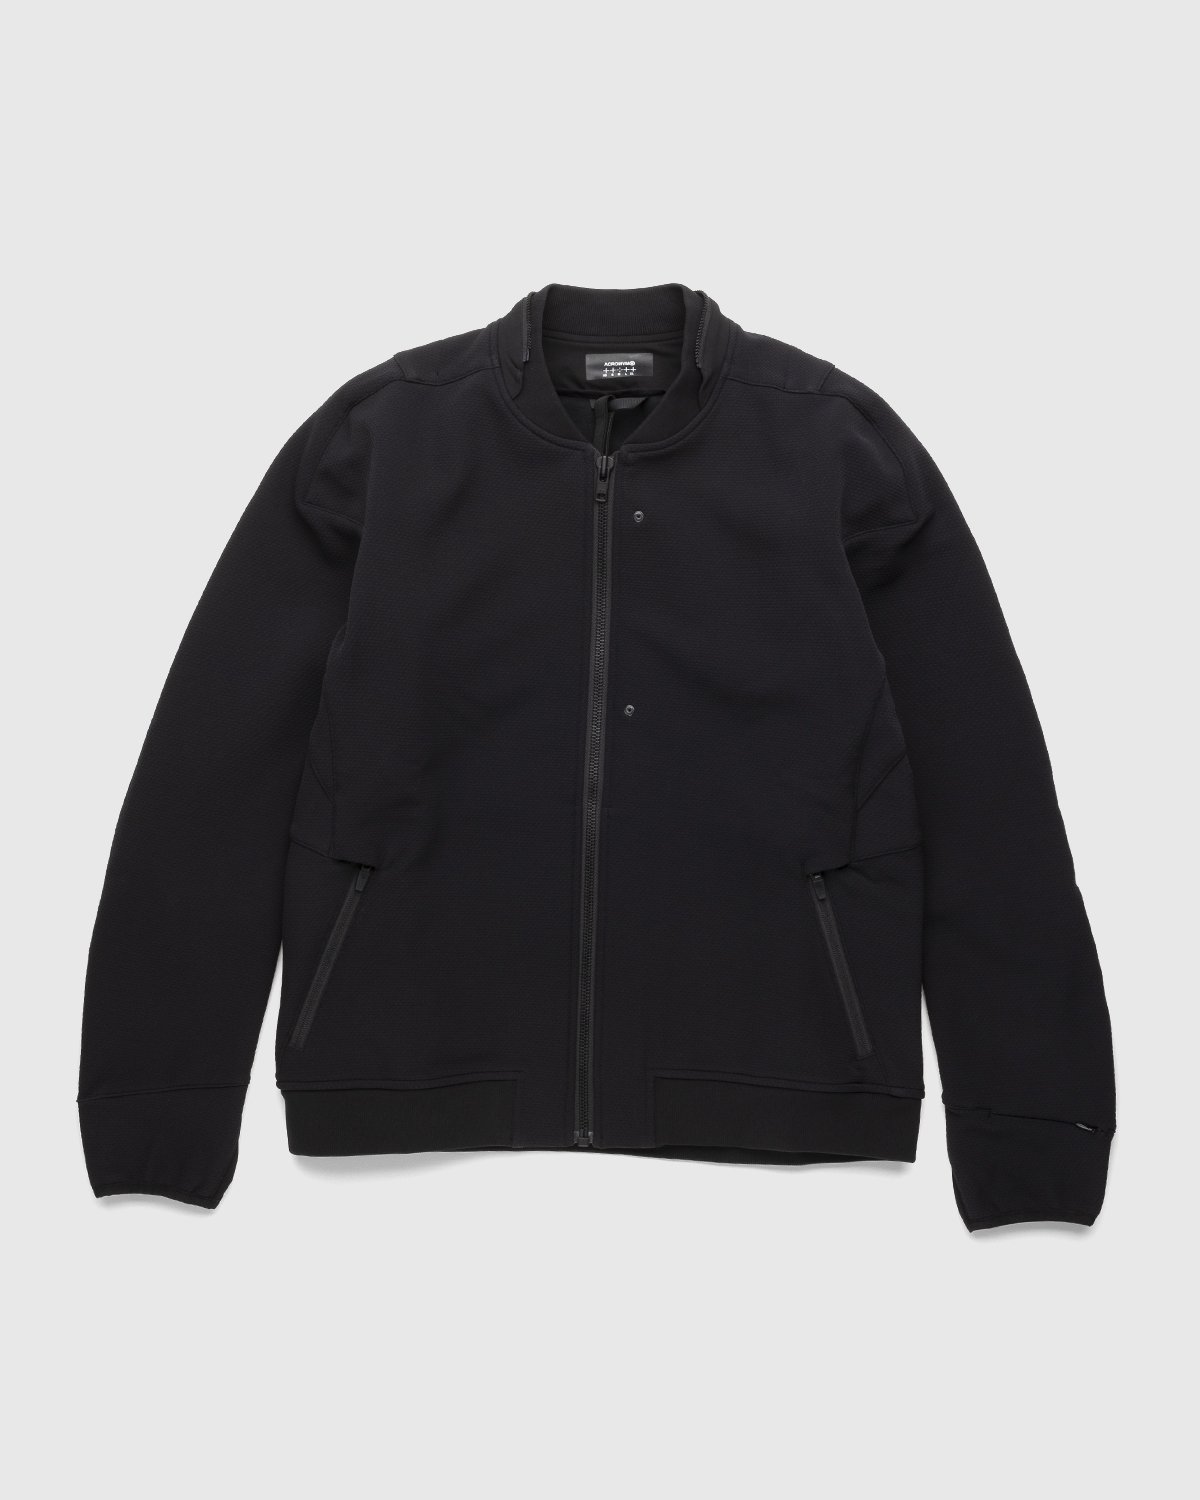 ACRONYM - J90-SS Jacket Black - Clothing - Black - Image 1